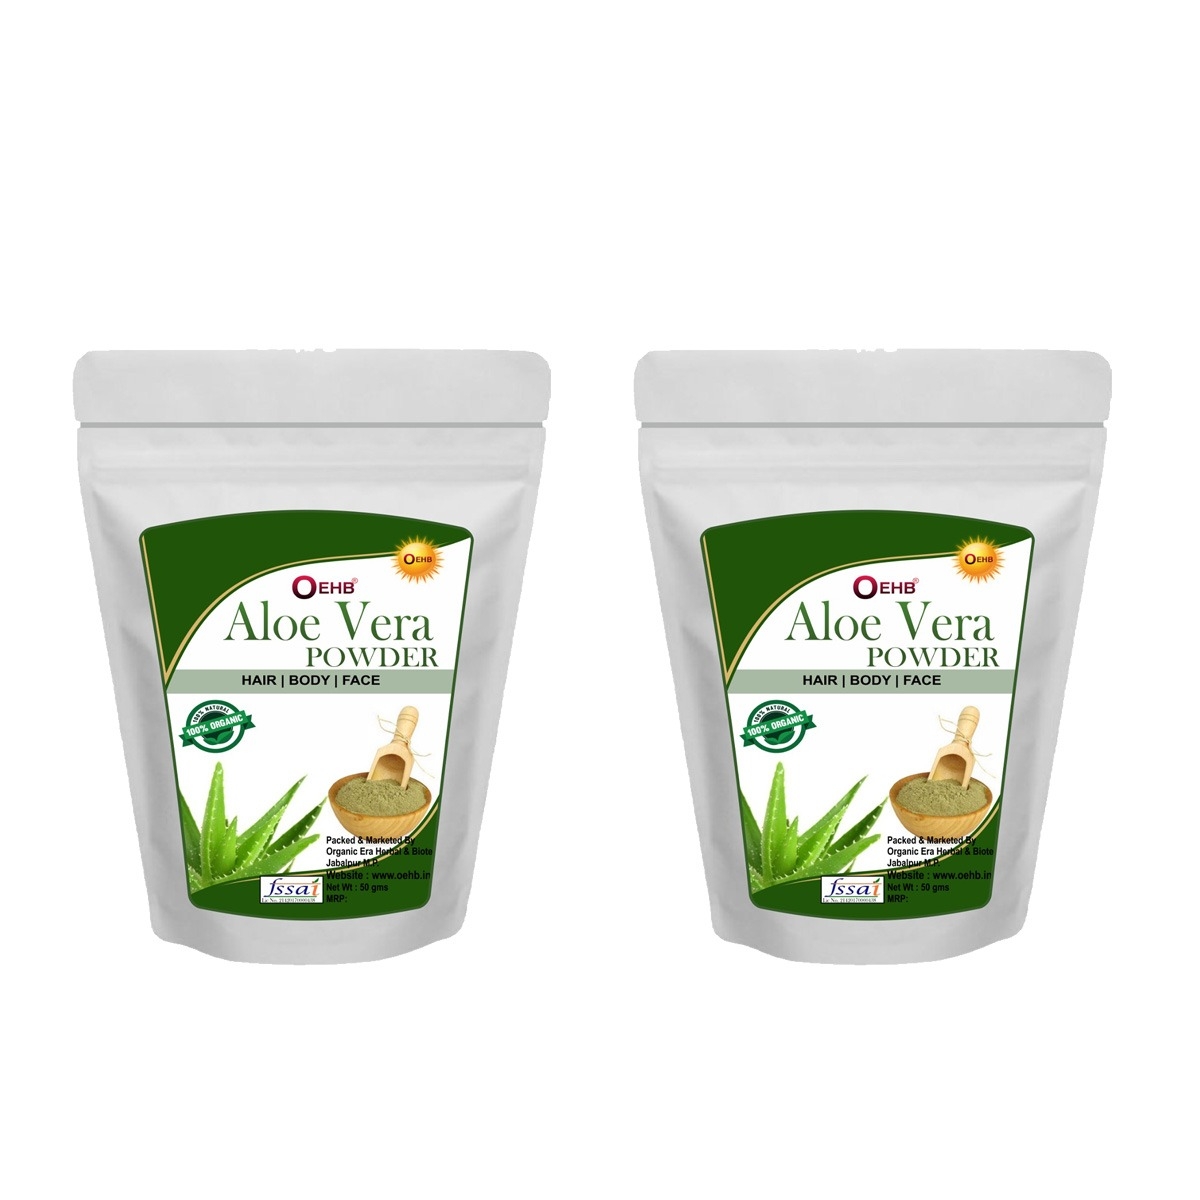 OEHB Aloevera leaf Powder 100g(Pack of 2 each-50g) - 100g